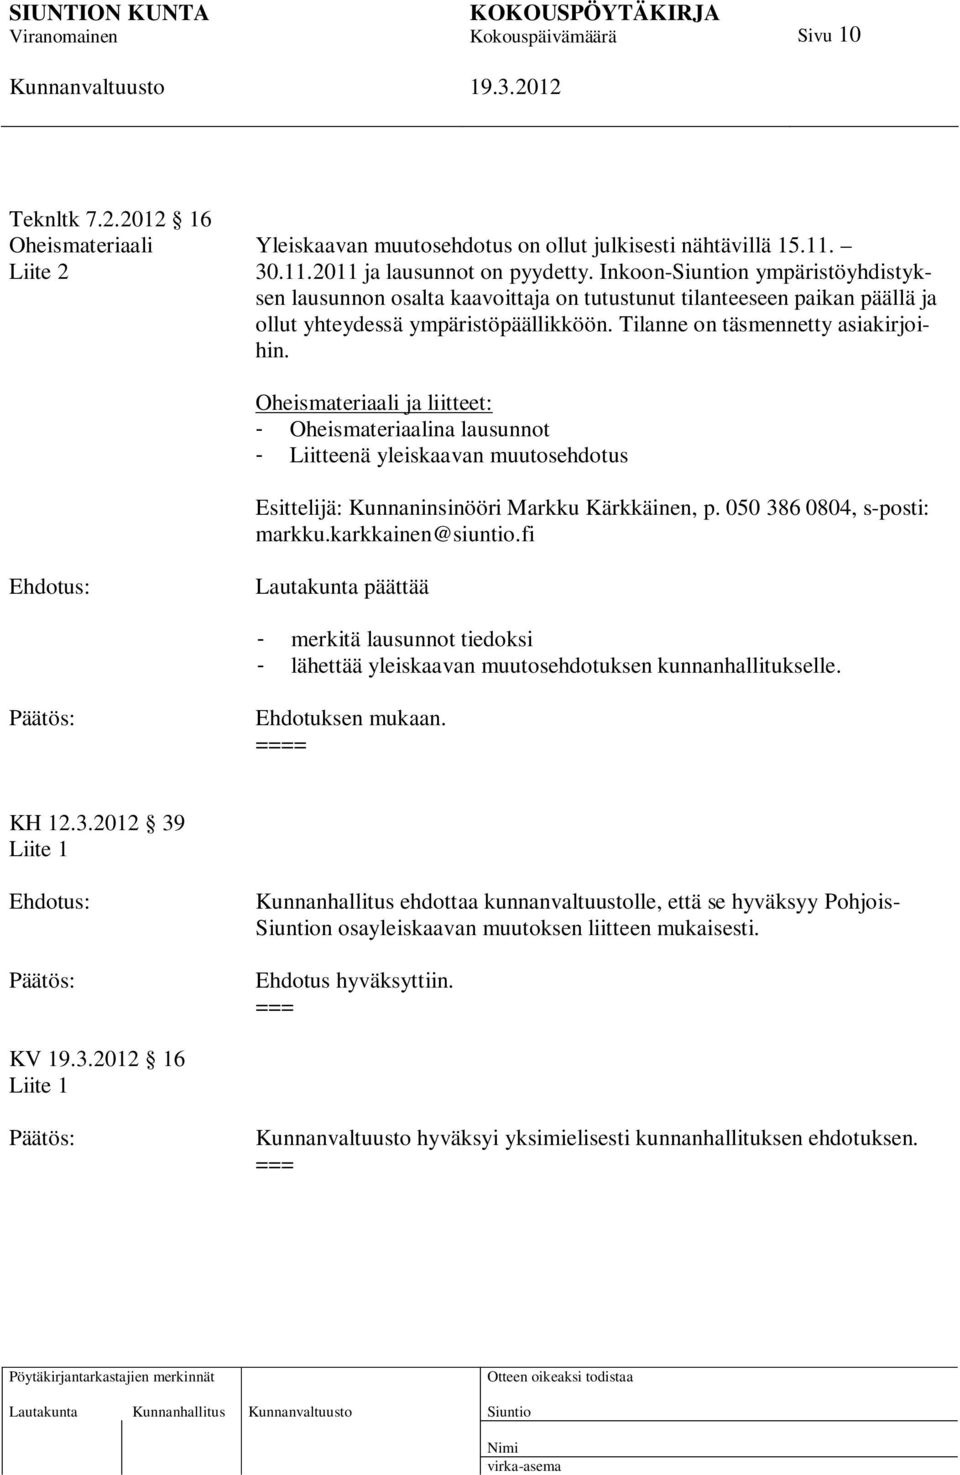 Oheismateriaali ja liitteet: - Oheismateriaalina lausunnot - Liitteenä yleiskaavan muutosehdotus Esittelijä: Kunnaninsinööri Markku Kärkkäinen, p. 050 386 0804, s-posti: markku.karkkainen@siuntio.